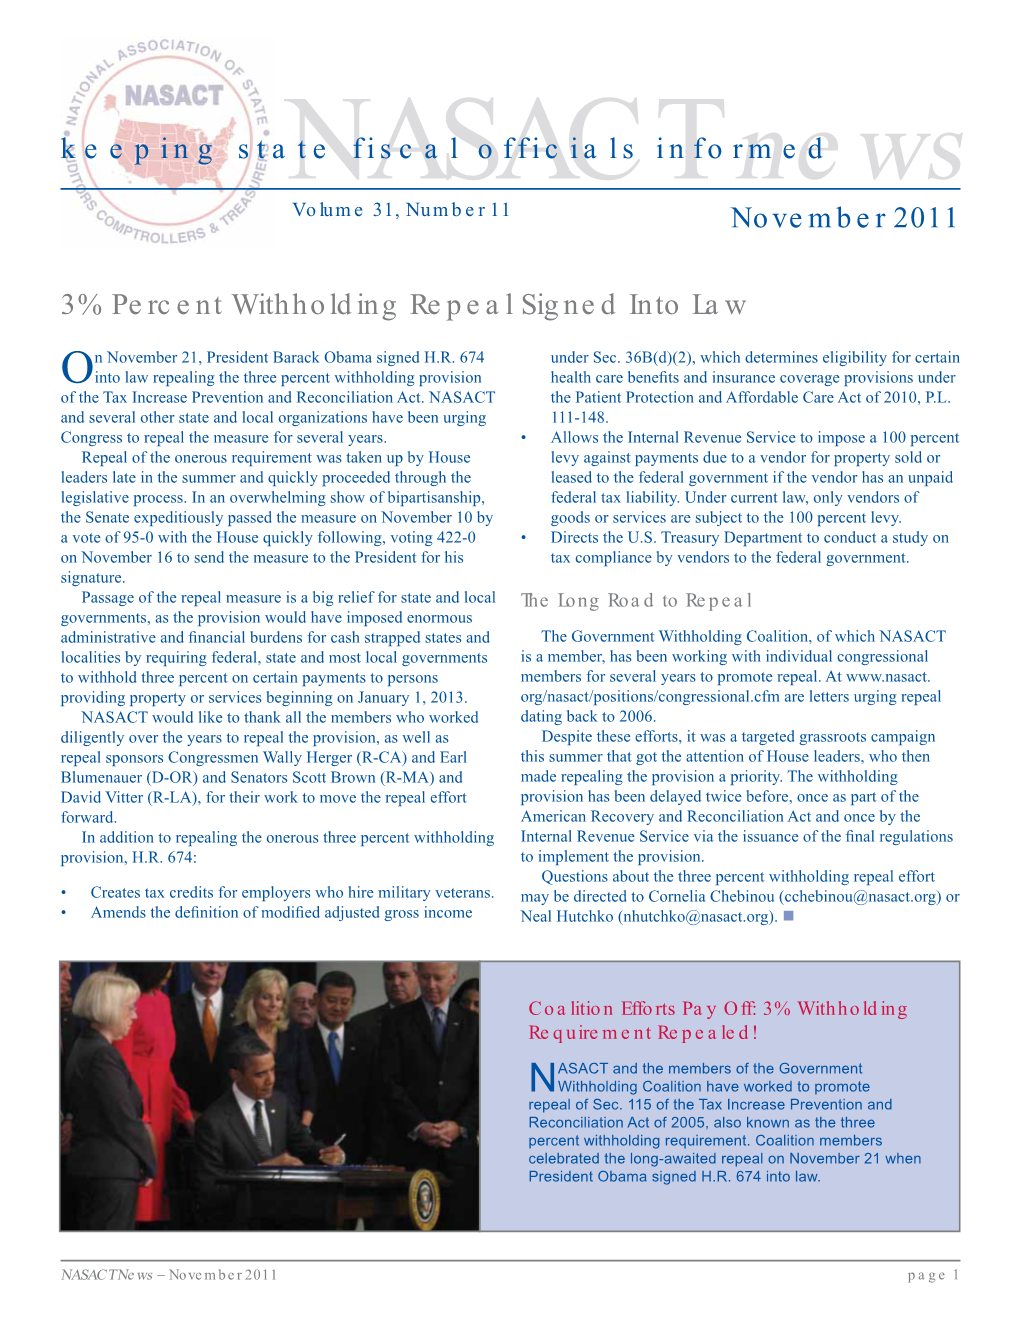 NASACT News, November 2011